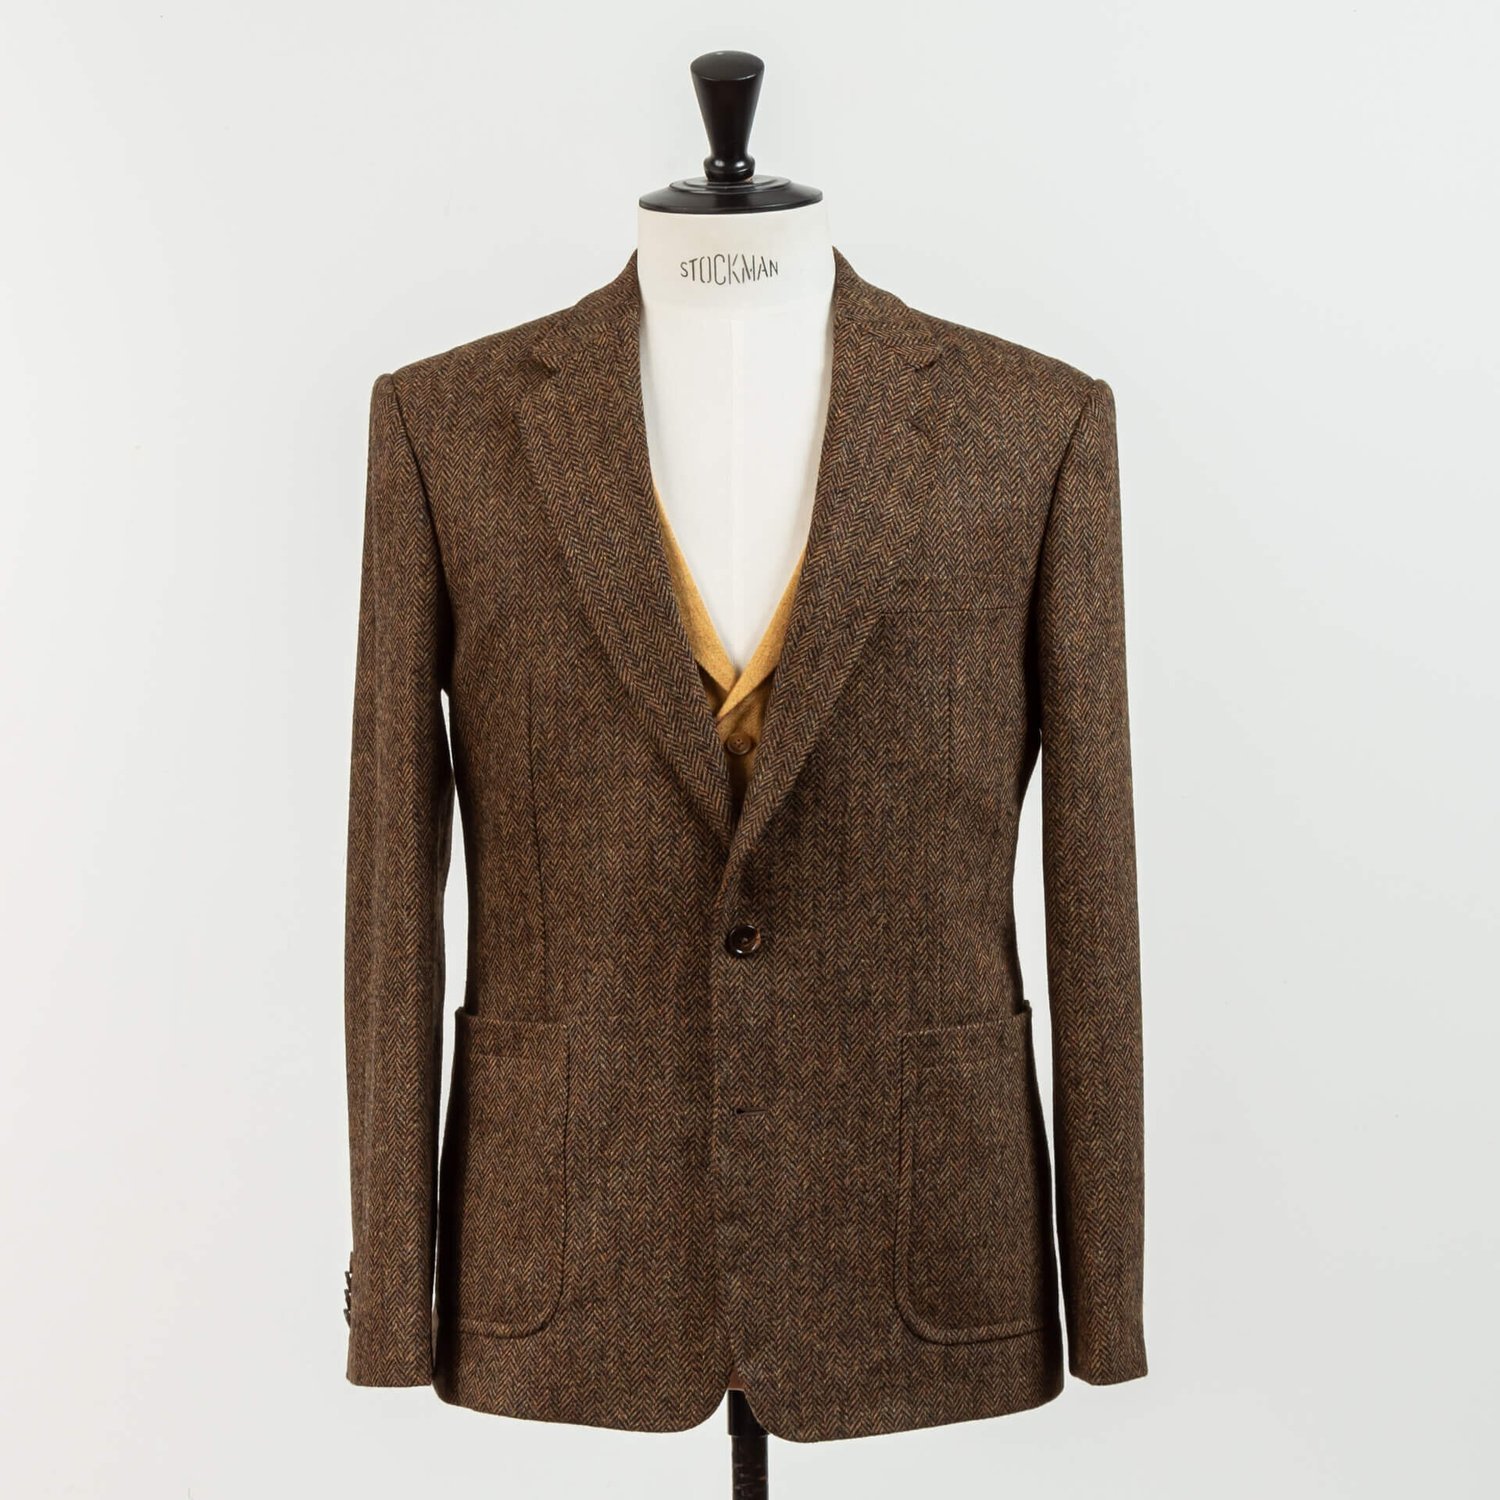 Vintage Trouwpak Tweed Bruin 3-delig met gilet in okergeel tweed